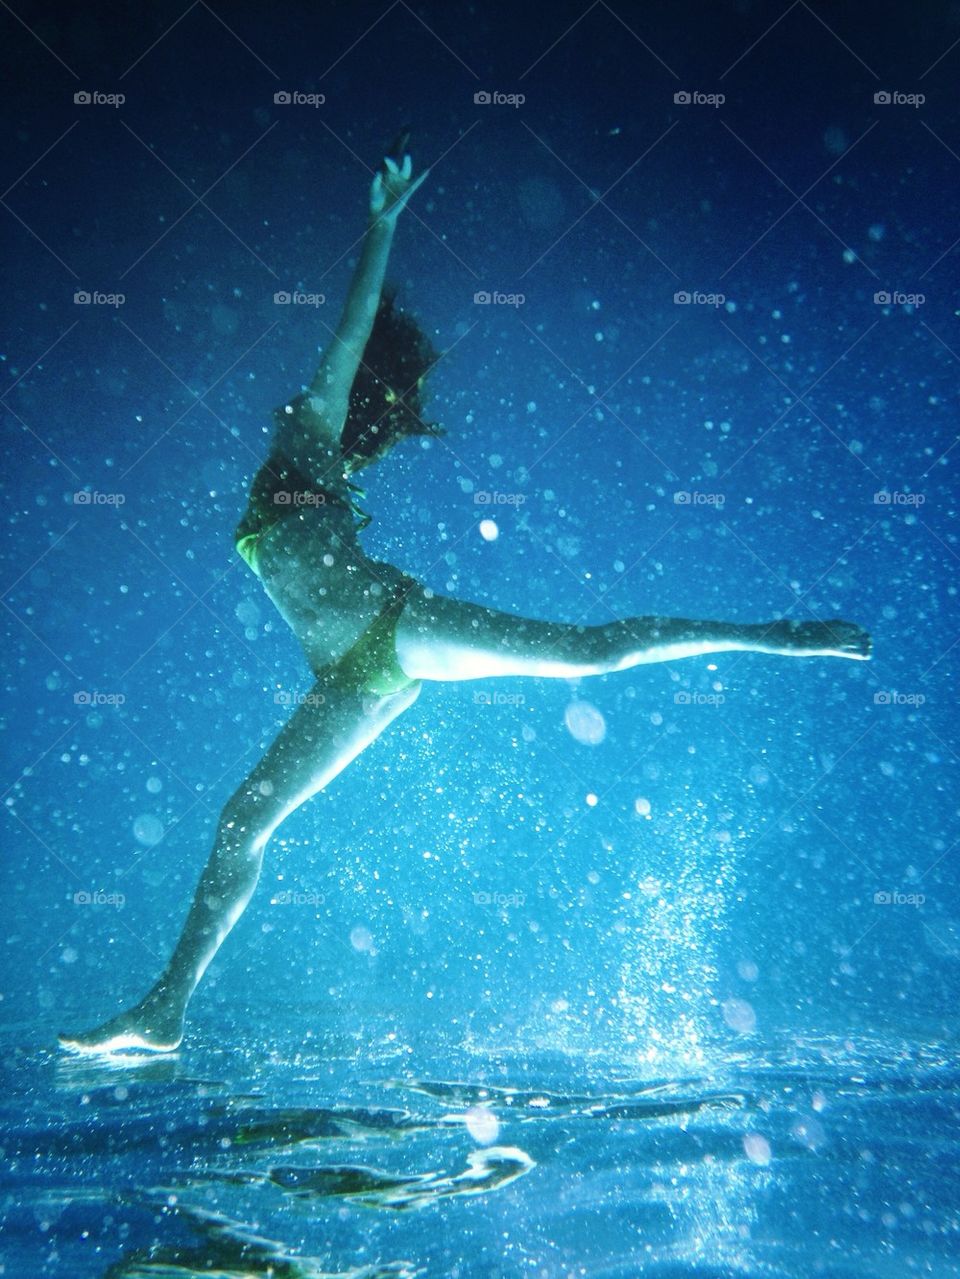 Underwater ballet